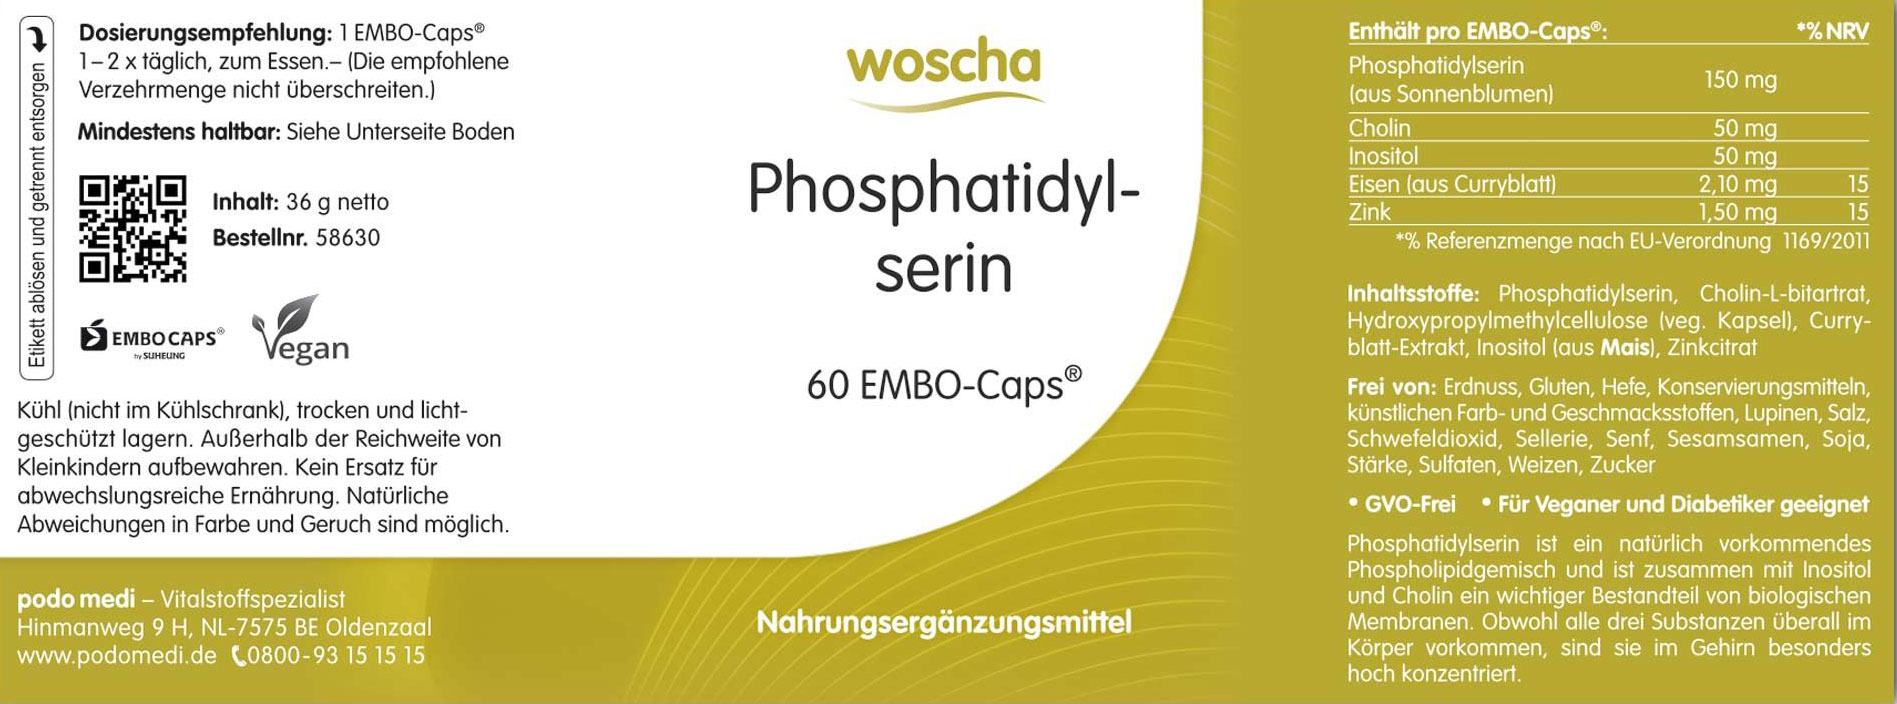 Woscha Phosphatidylserin von podo medi beinhaltet 60 Kapseln Etikett, Werbung, Plakat, Text, QR Kode